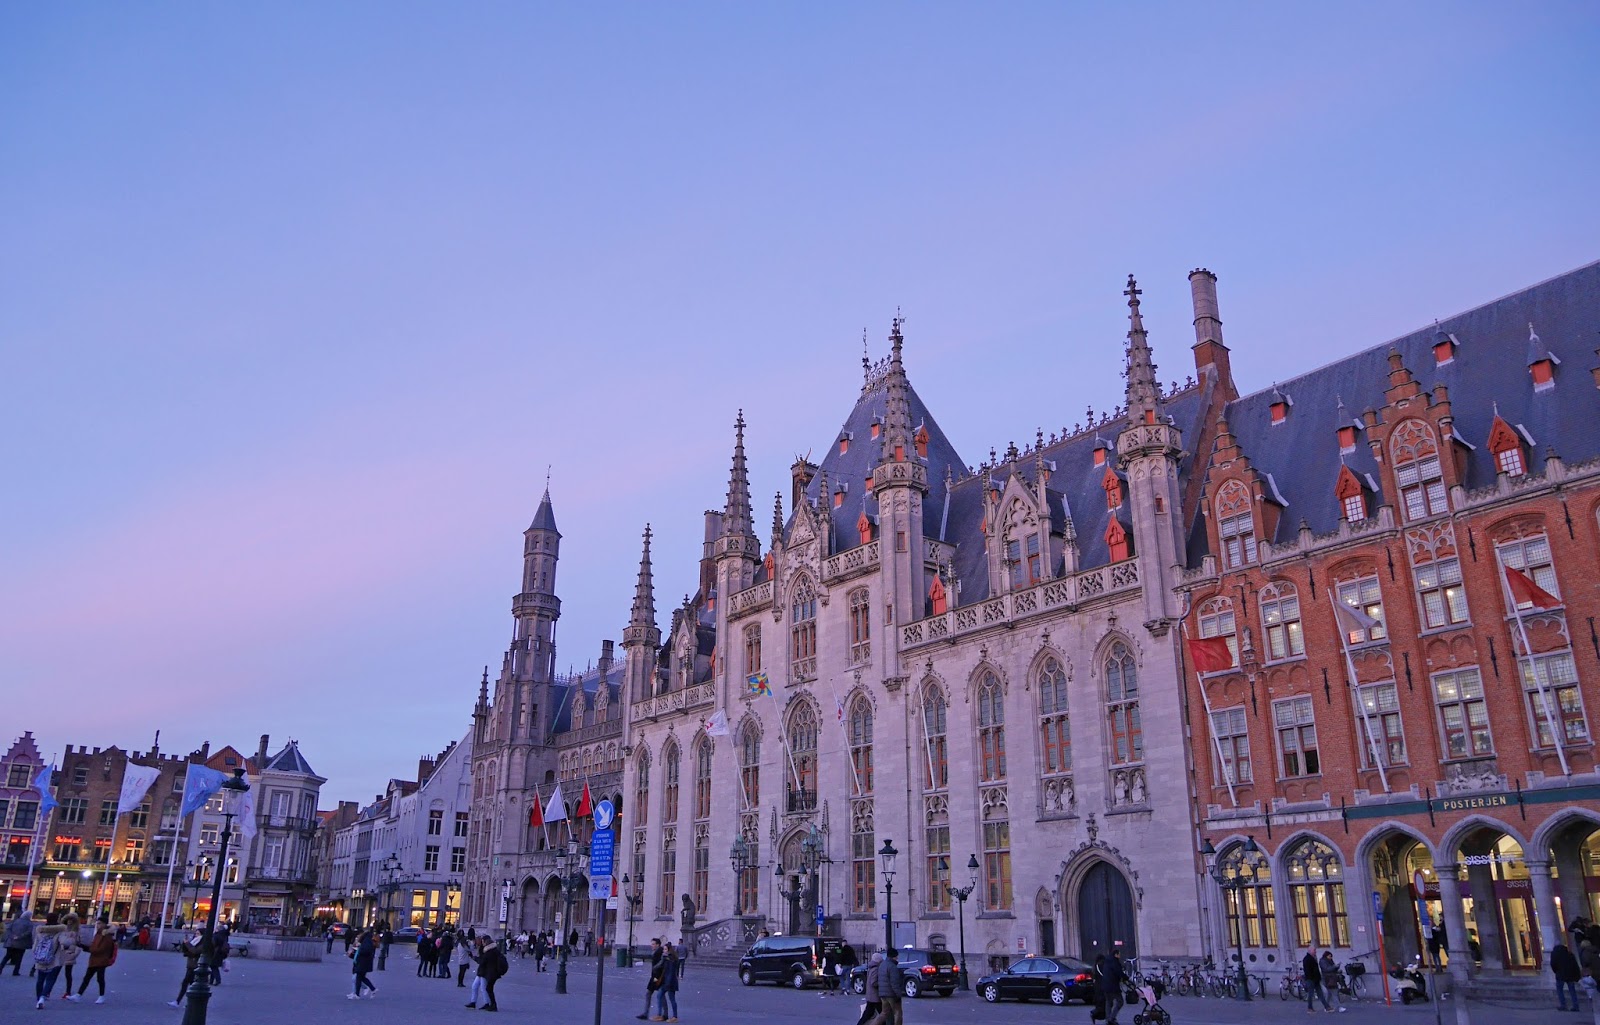 Bruges Market Square at sunset